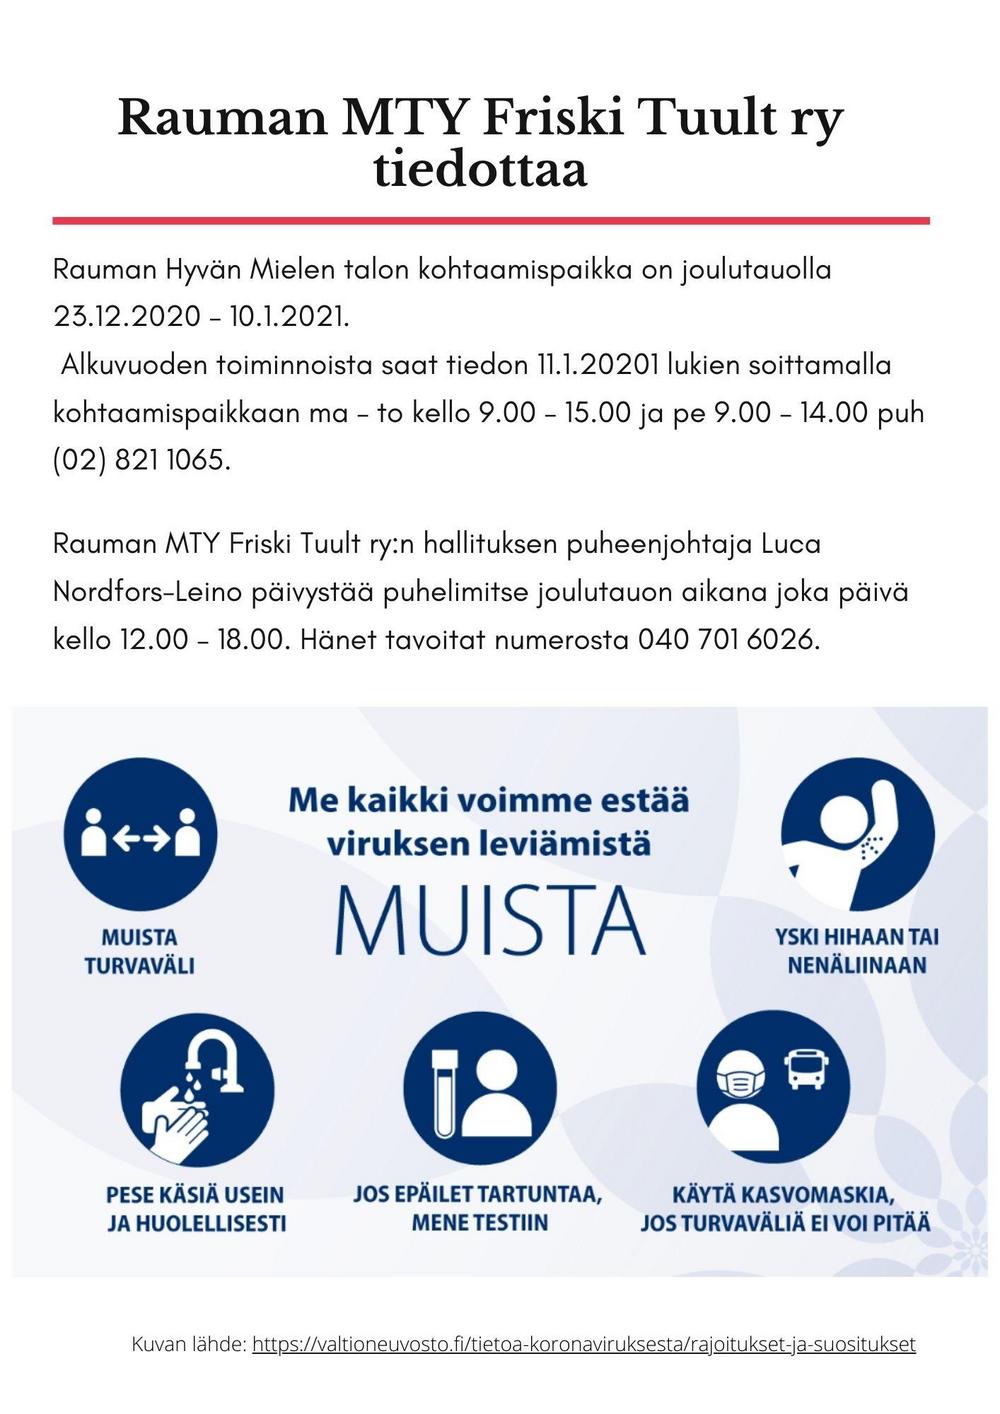 Rauman Hyvän Mielen talon kohtaamispaikka on joulutauolla 23.12.2020 – 10.1.2021.  Alkuvuoden toiminnoista saat tiedon 11.1.20201 lukien soittamalla kohtaamispaikkaan ma – to kello 9.00 – 15.00 ja pe 9.00 – 14.00 puh (02) 821 1065.
Rauman MTY Friski Tuult ry:n hallituksen puheenjohtaja Luca Nordfors-Leino päivystää puhelimitse joulutauon aikana joka päivä kello 12.00 – 18.00. Hänet tavoitat numerosta 040 701 6026.
